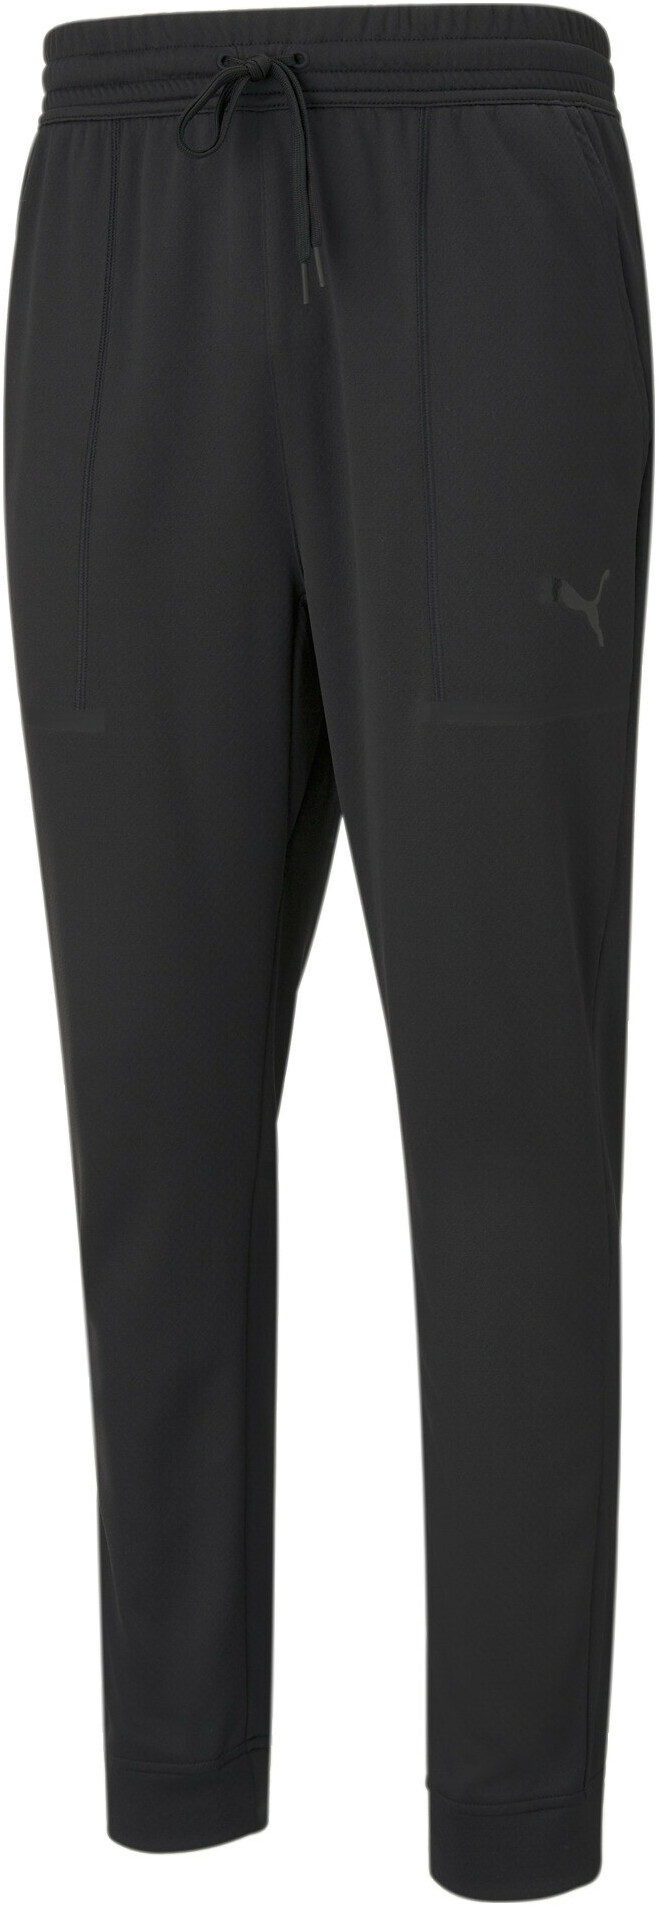 Спортивные брюки мужские PUMA Train Tech Knit Jogger черные XL